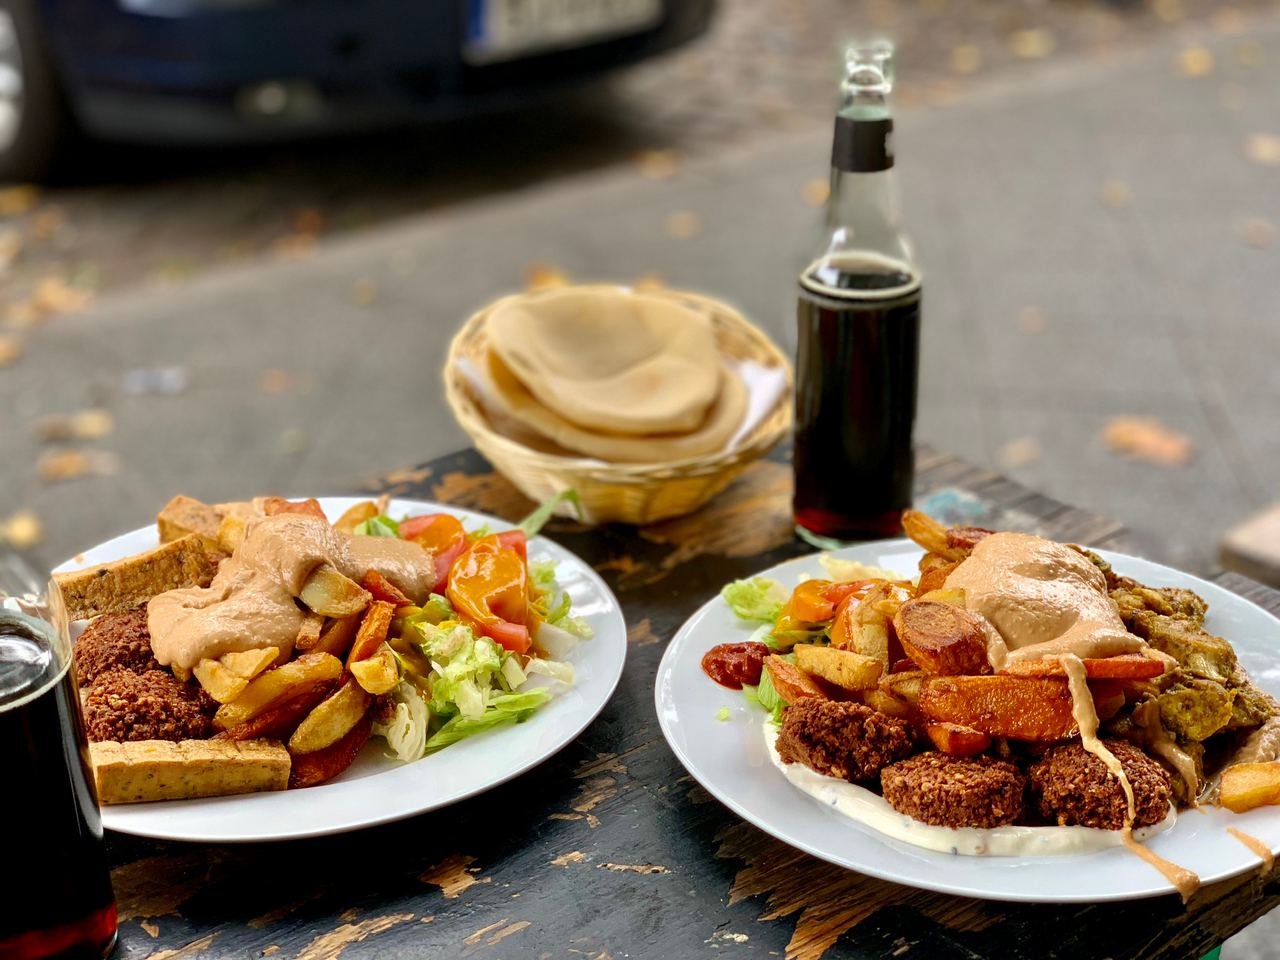 Zwei weiße Teller, jeweils mit Falafel, Halloumi und Salat. Im Hintergrund rundes arabisches Brot und eine Flasche Fritzcola.